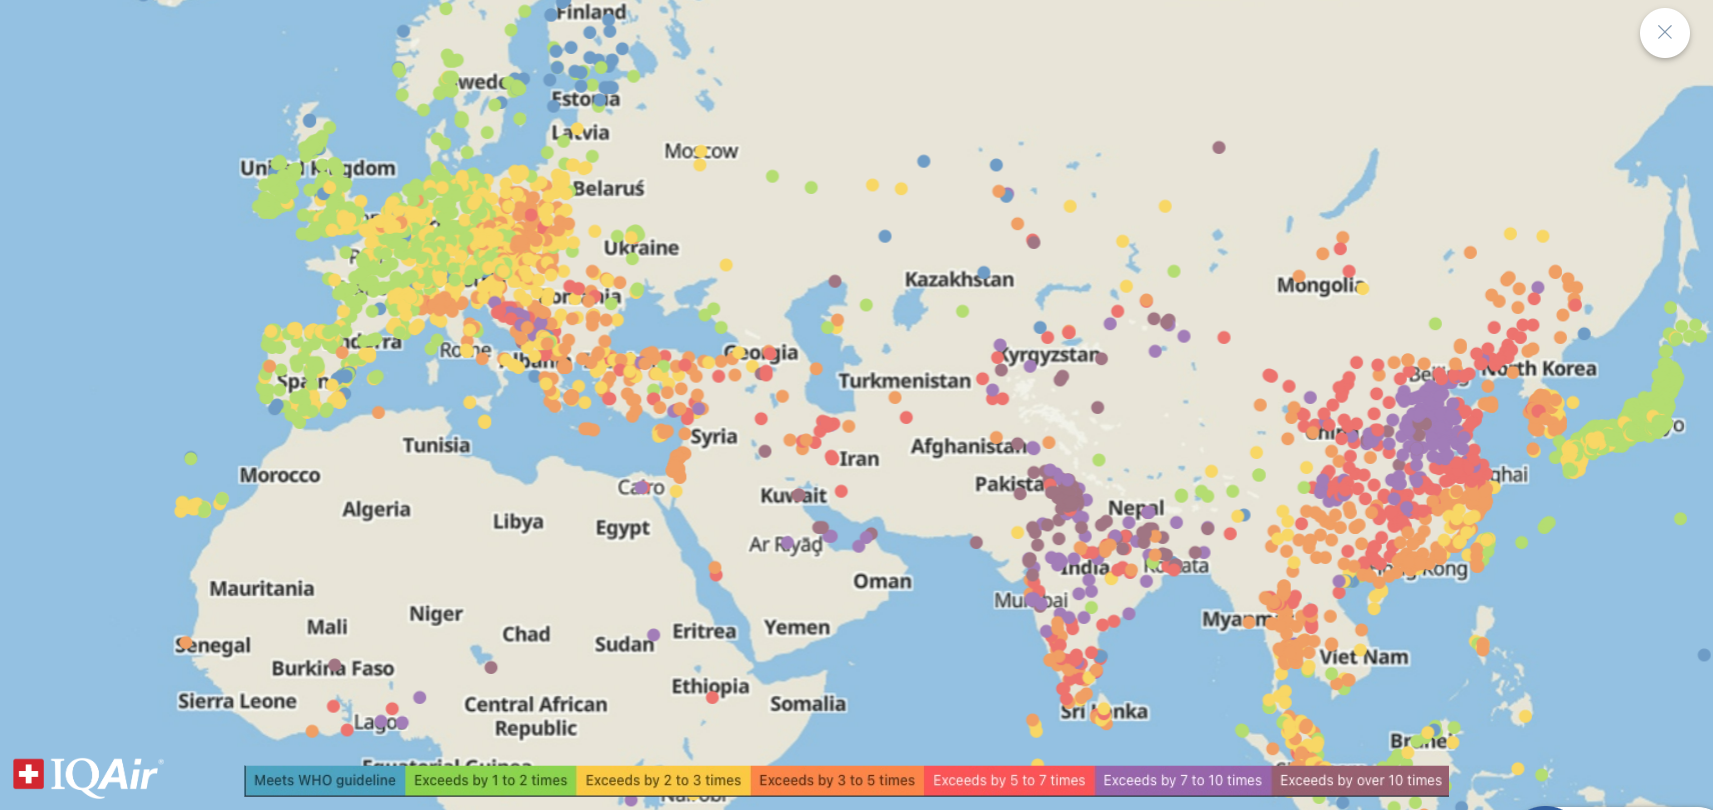 Mapa contaminación mundial. Elaborado por IQAir